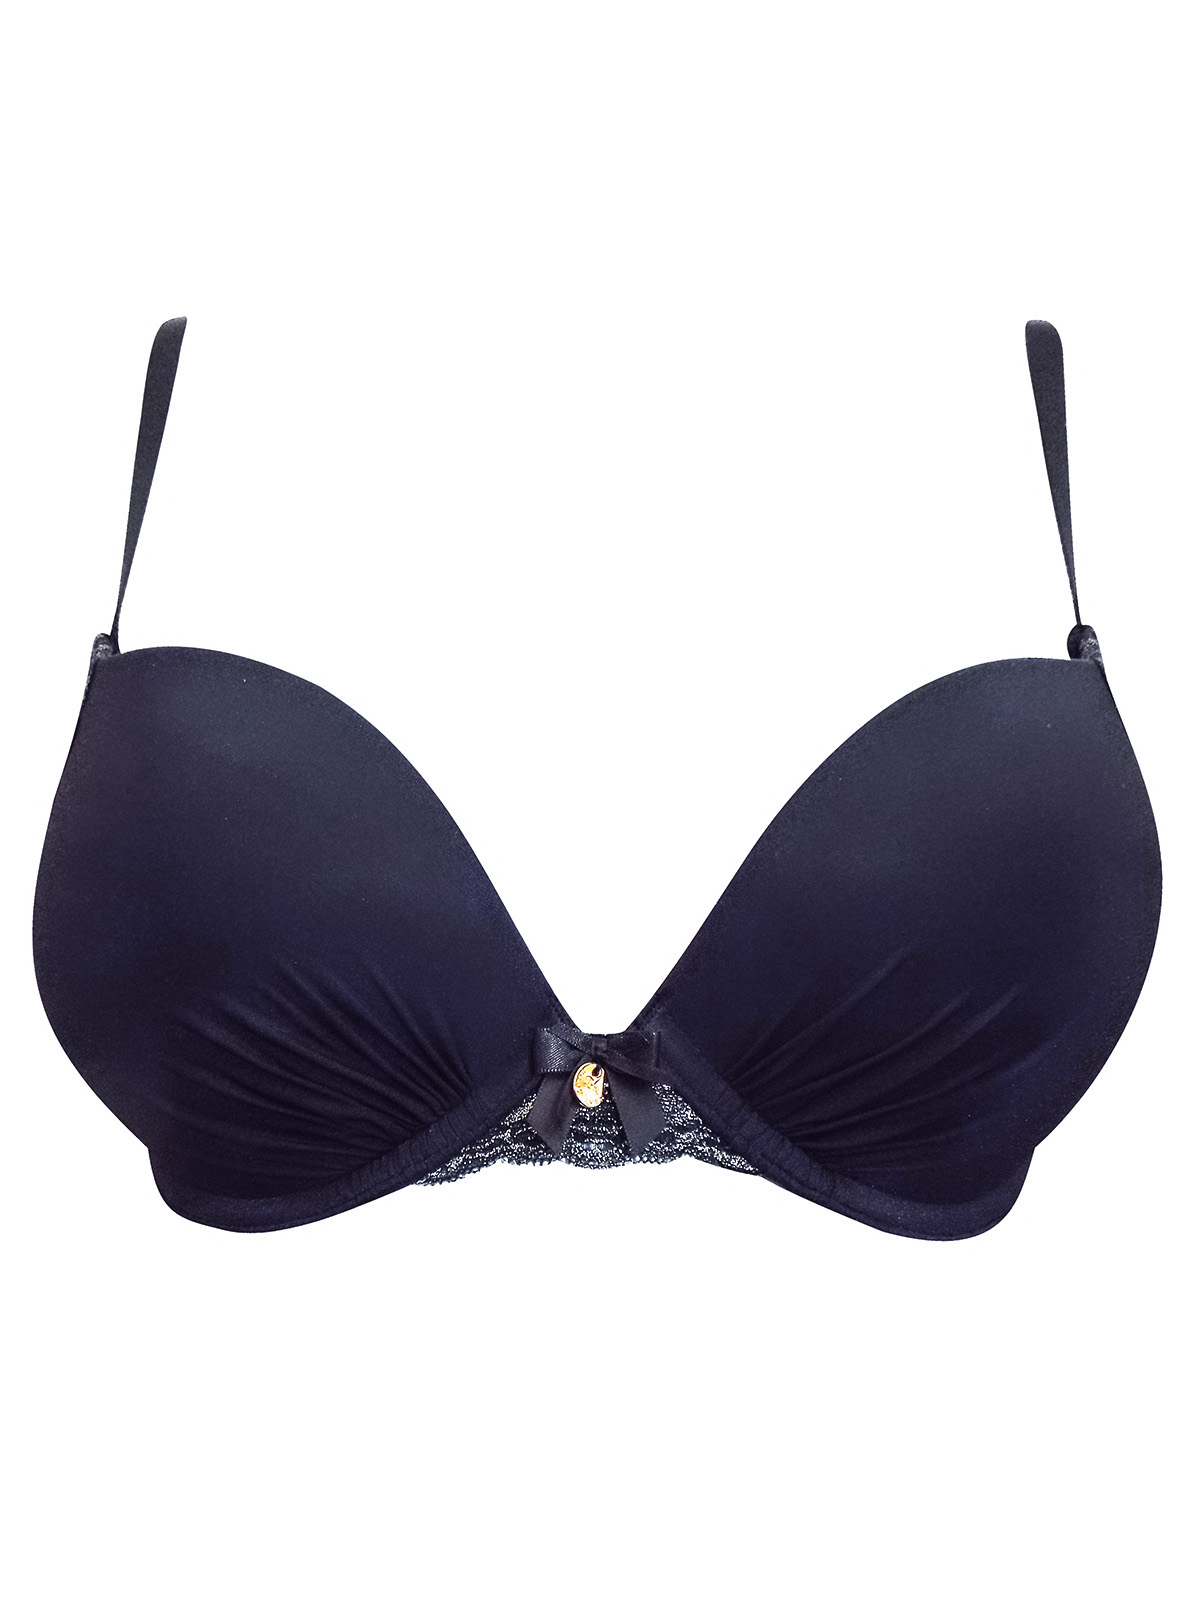 Boux Avenue Mackenna plunge bra - Black & Nude - 32DD, £12.00